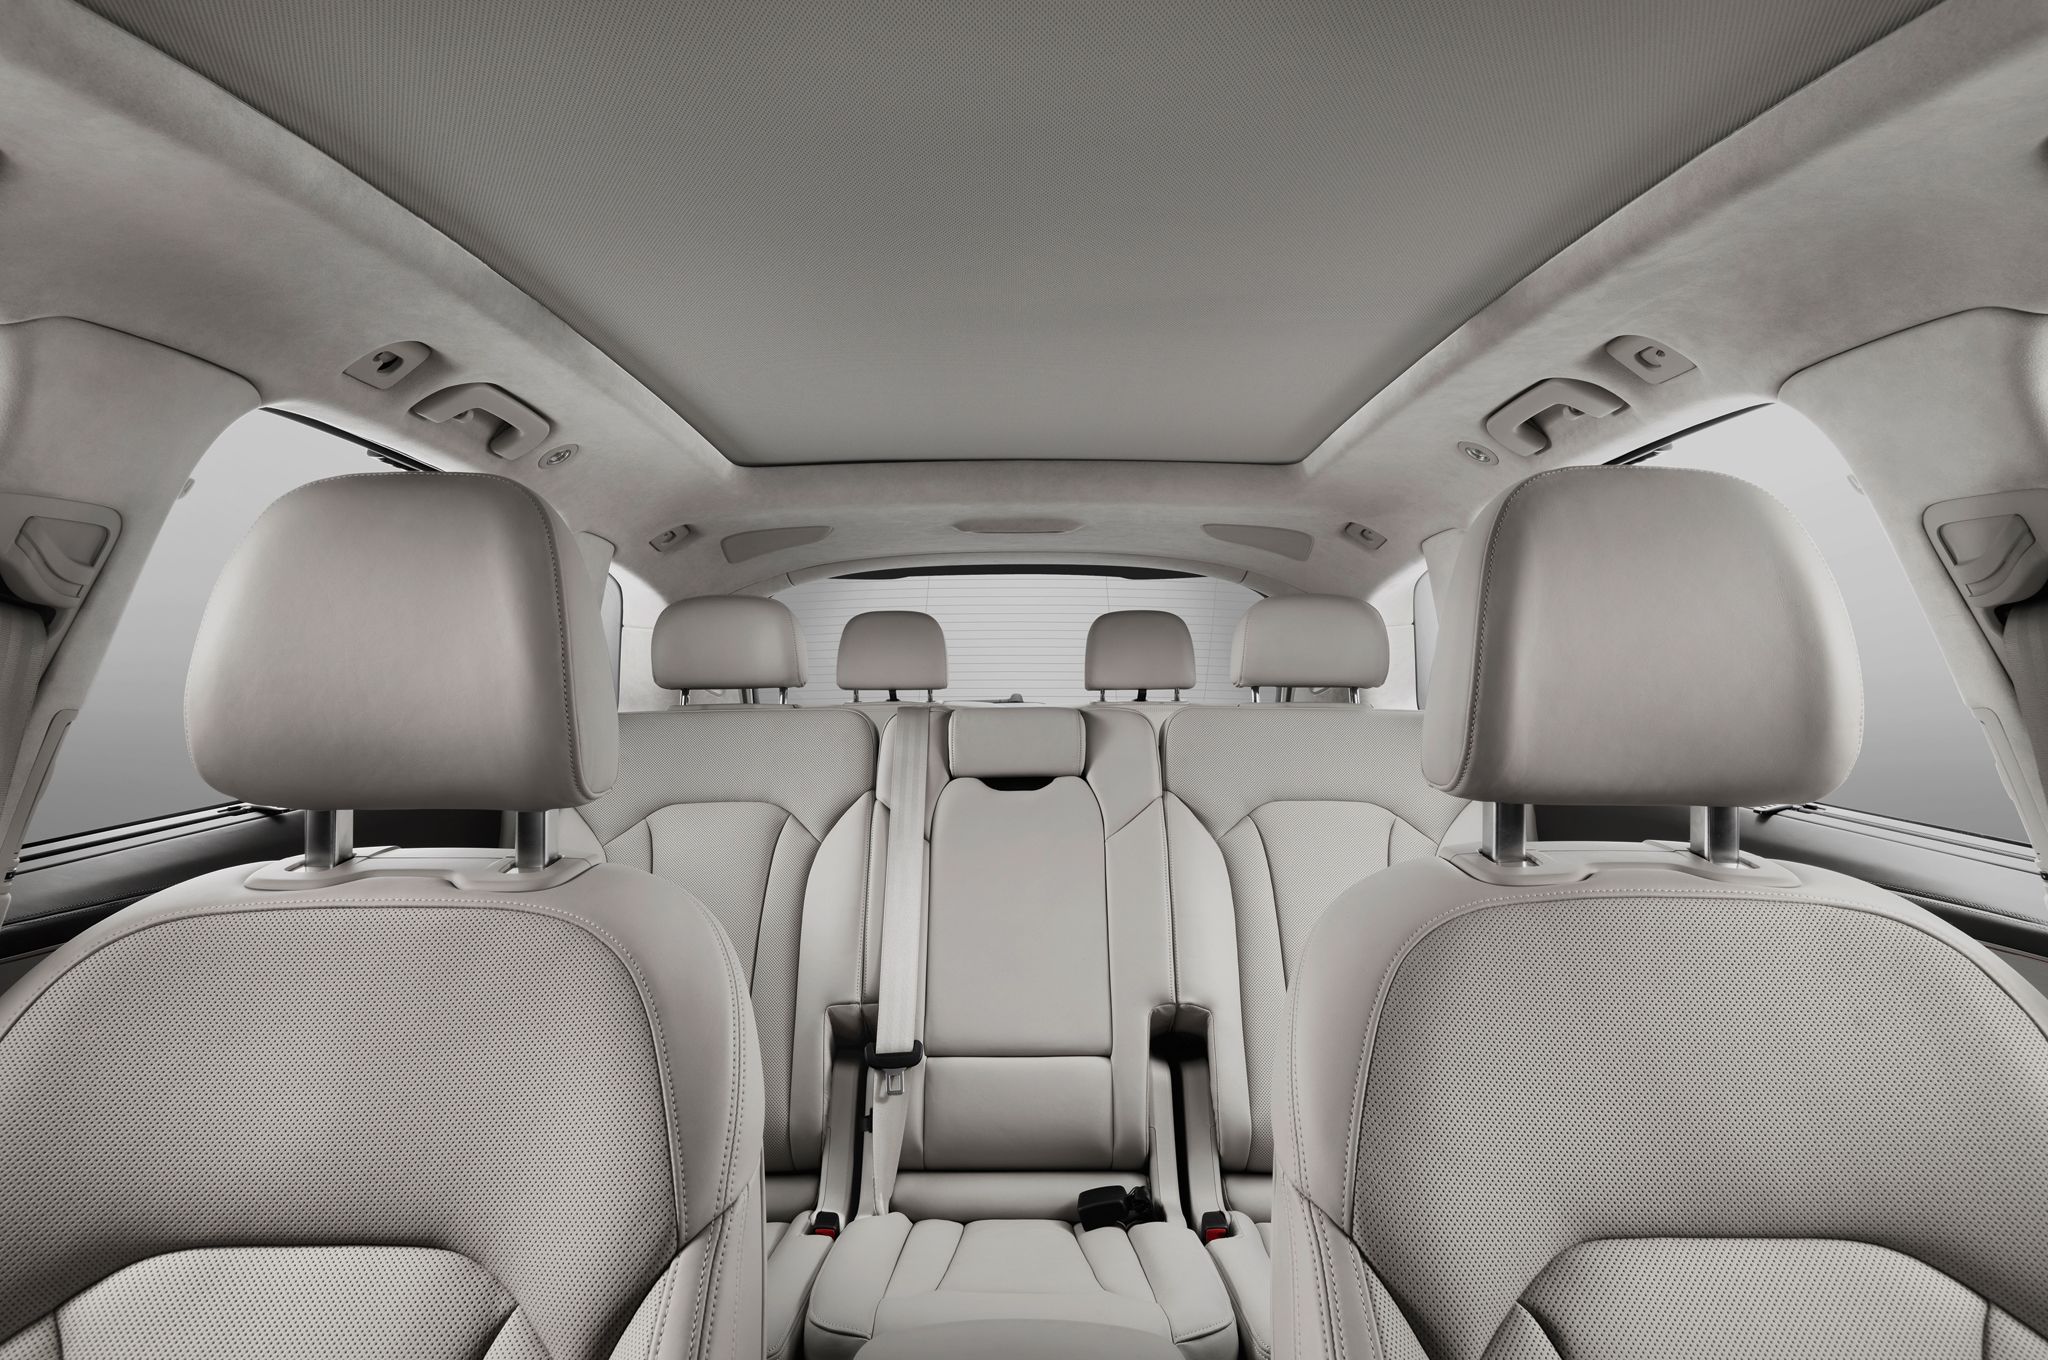 2016 Audi Q7 Interior Profile (View 1 of 8)